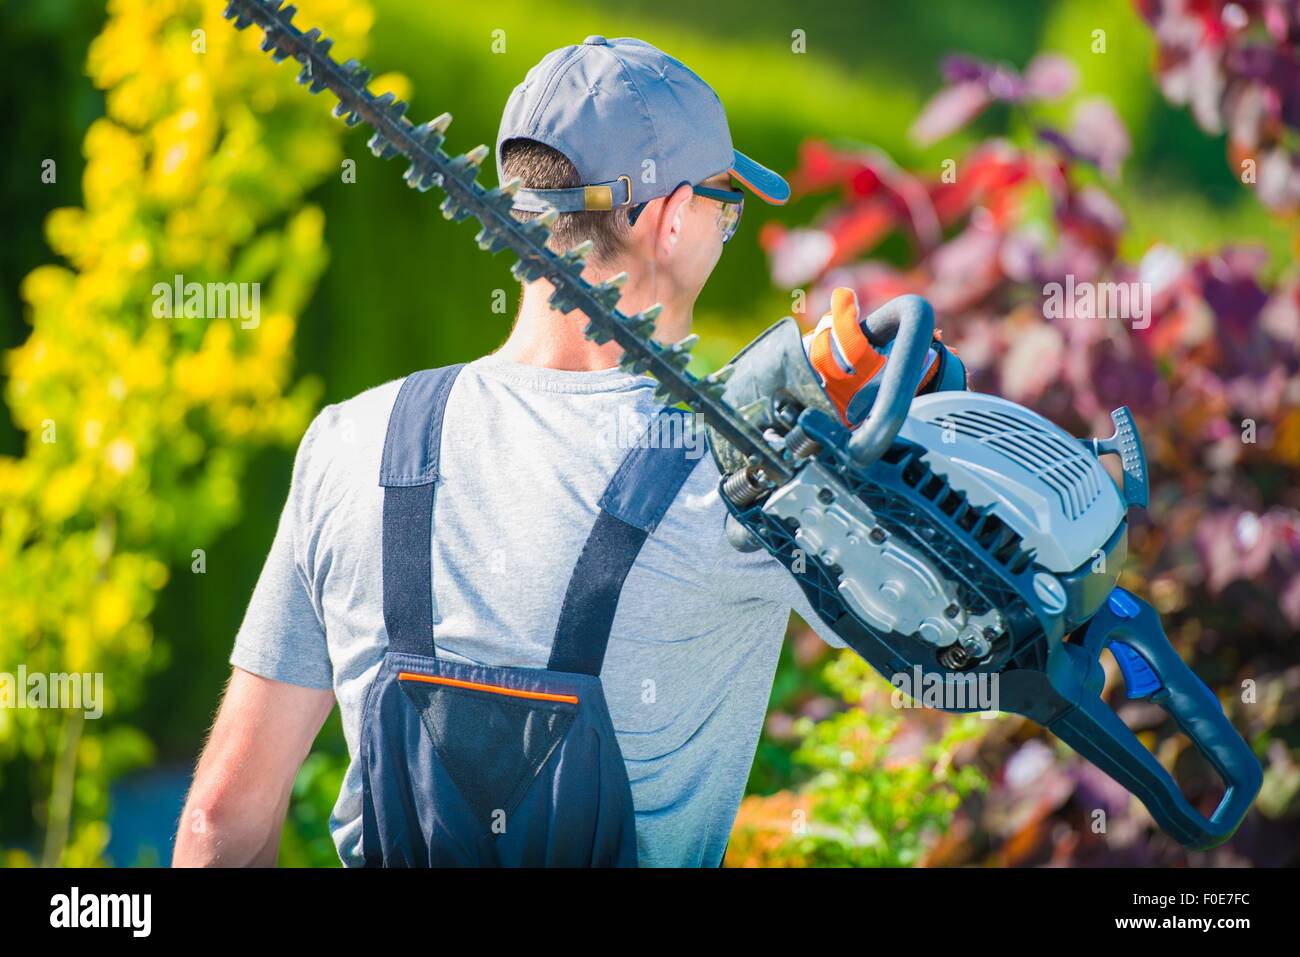 Jardinier professionnel avec de grandes taille-haie à essence de se rendre au travail. Jardin d'été. Banque D'Images